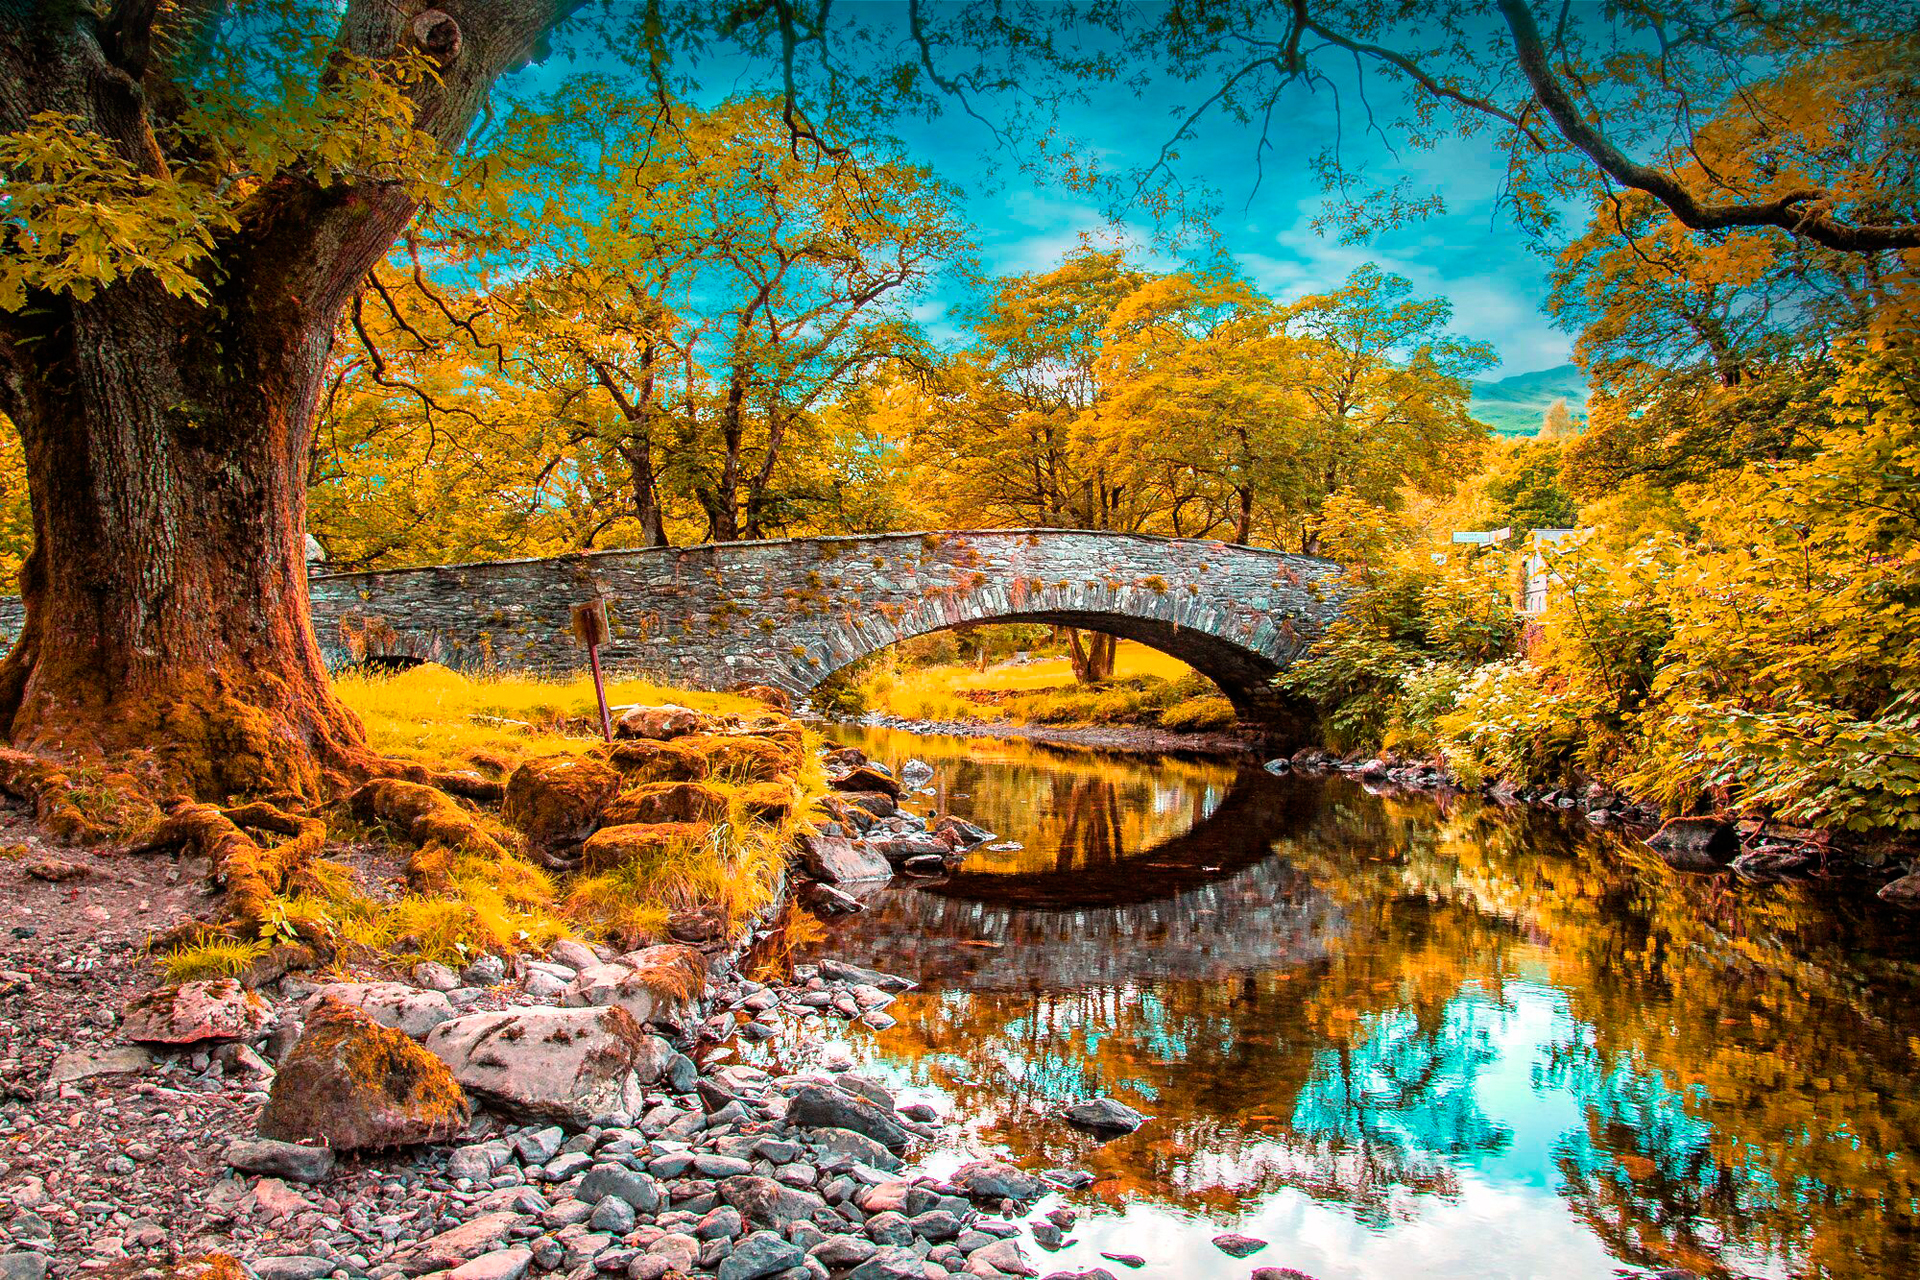 Autumn park with a bridge over a stream